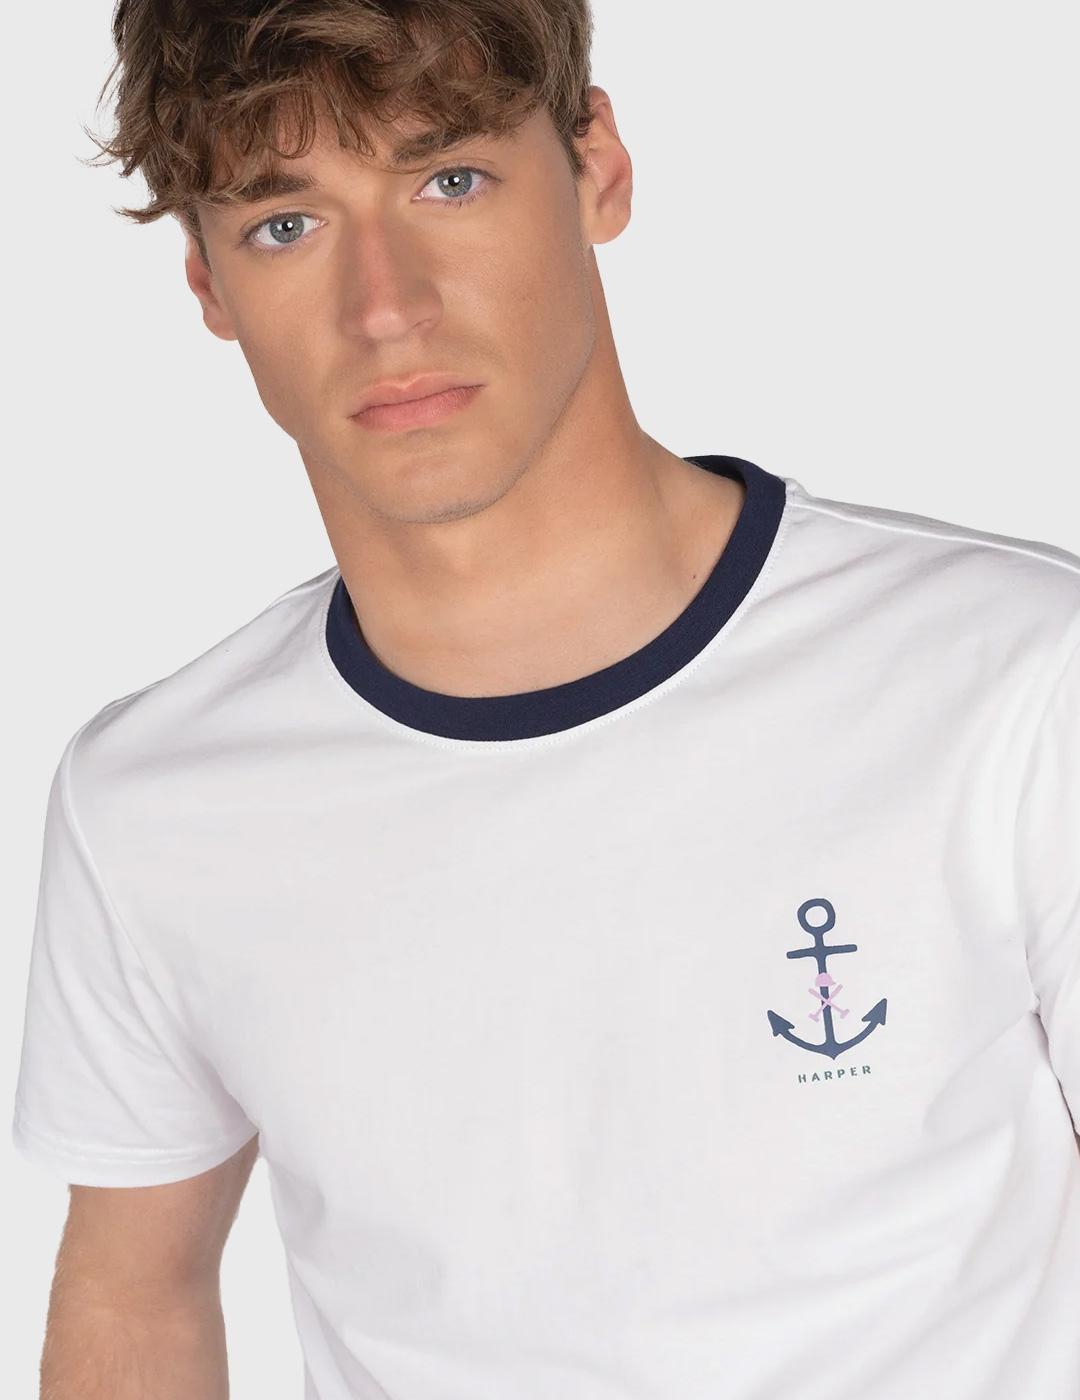 Harper & Neyer Camiseta Anchor blanca para hombre